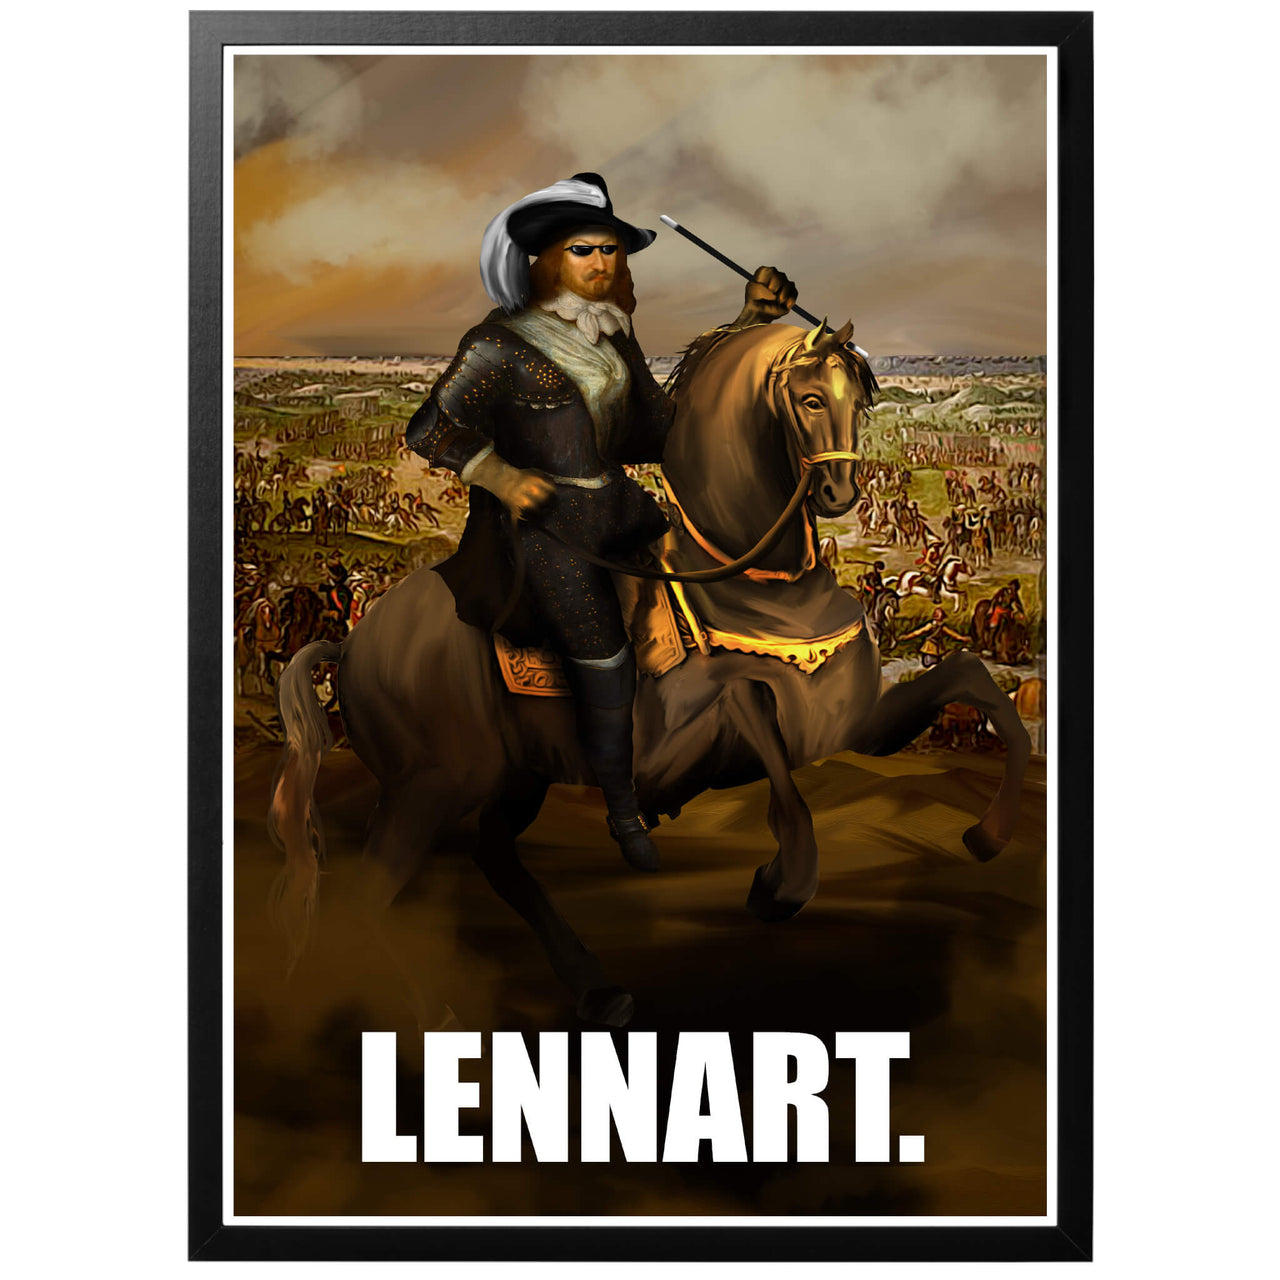 Lennart. Poster